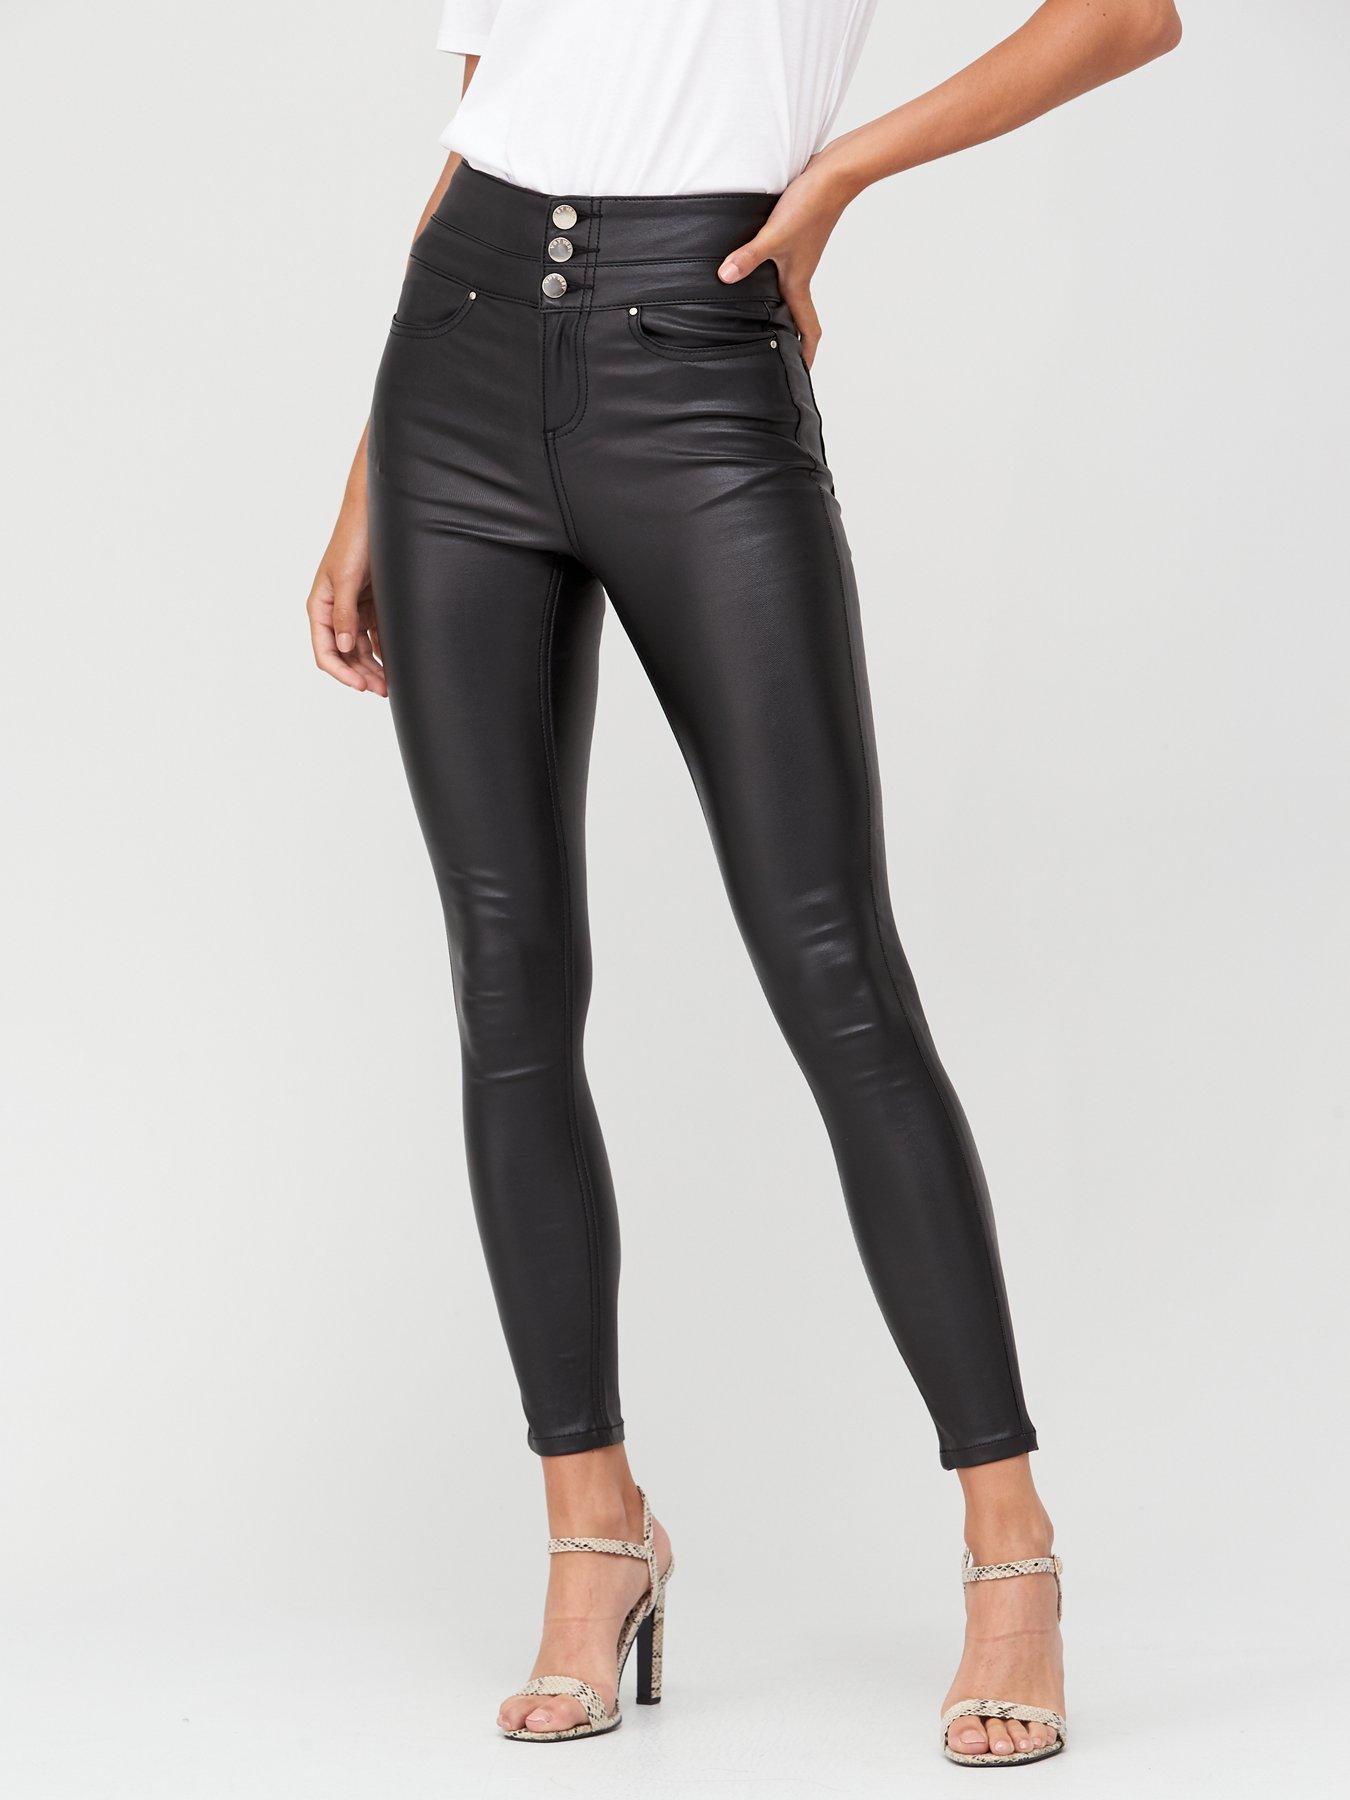 black coated skinny jeans womens